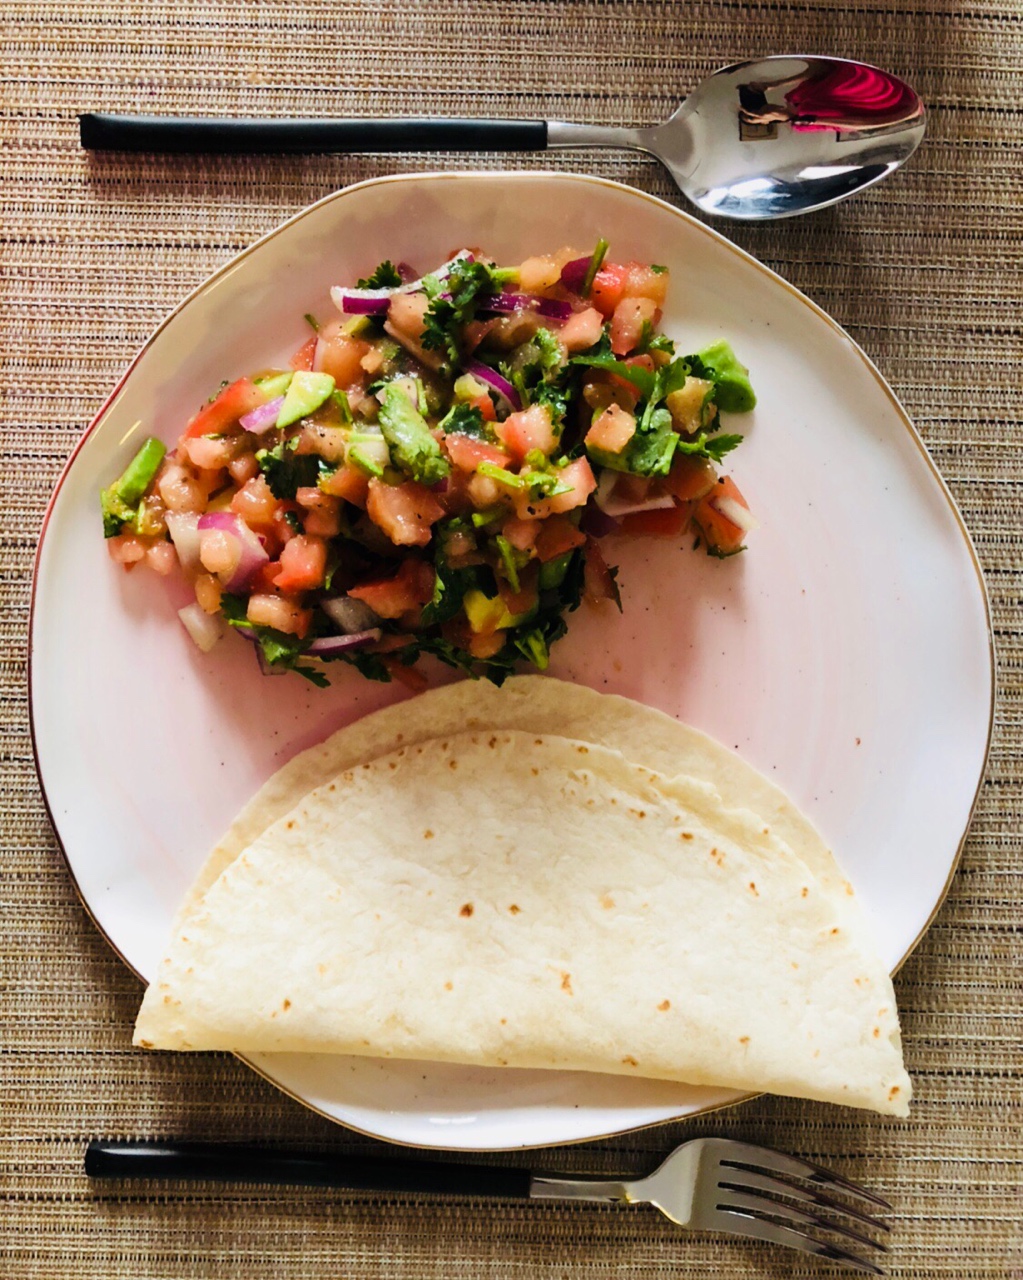 清爽开胃又低卡- 墨西哥牛油果莎莎酱 Mexican Avocado Salsa